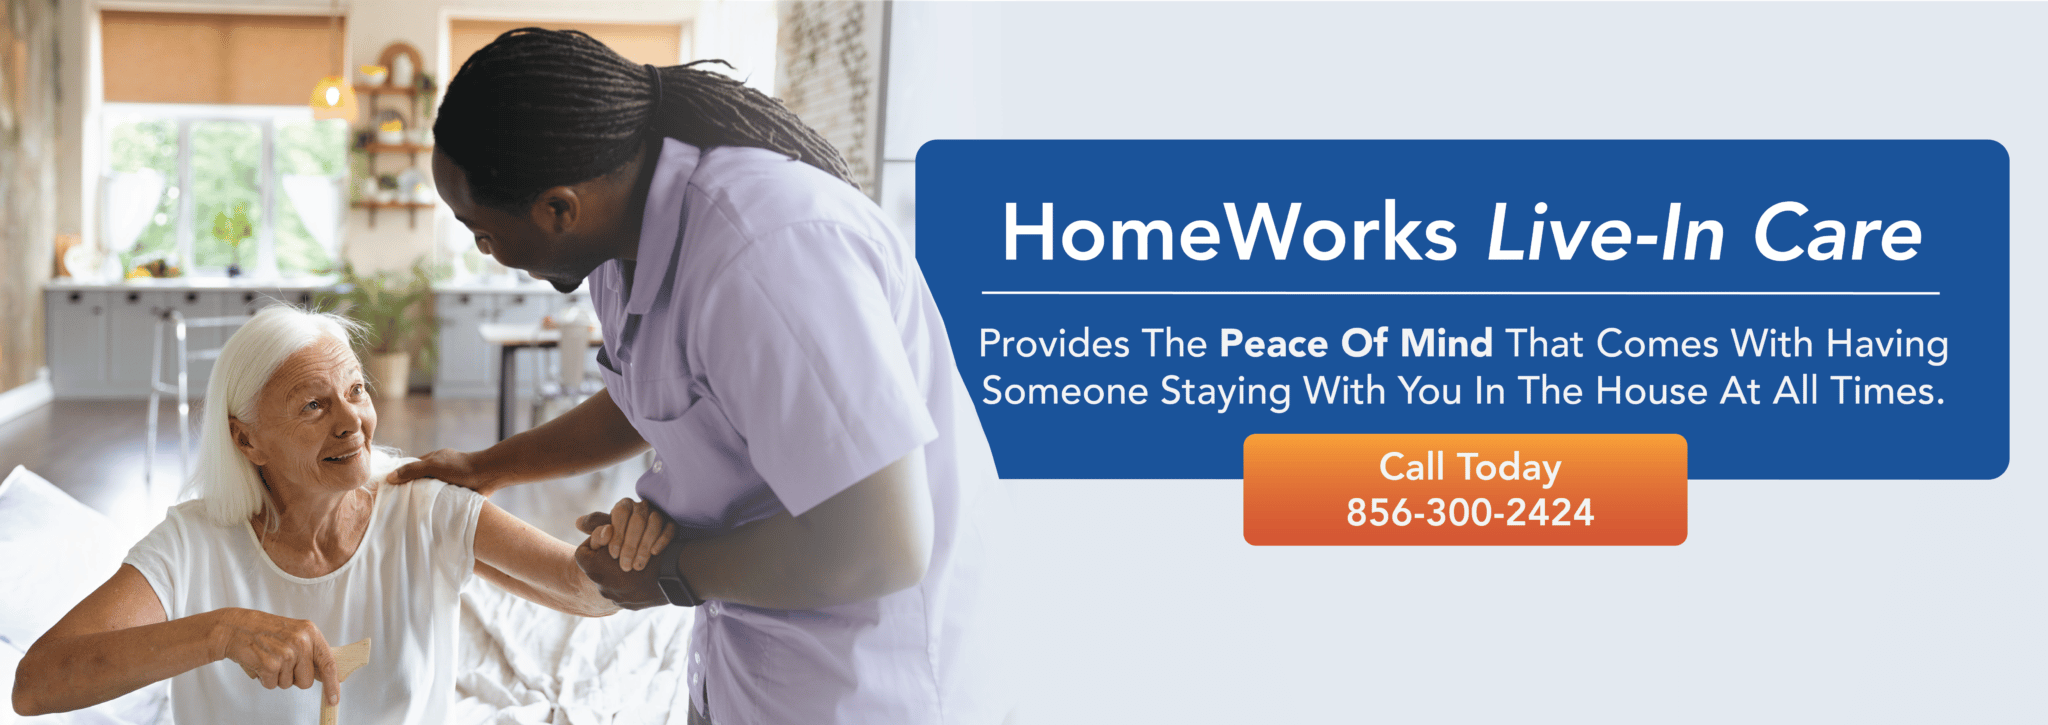 homeworks home care